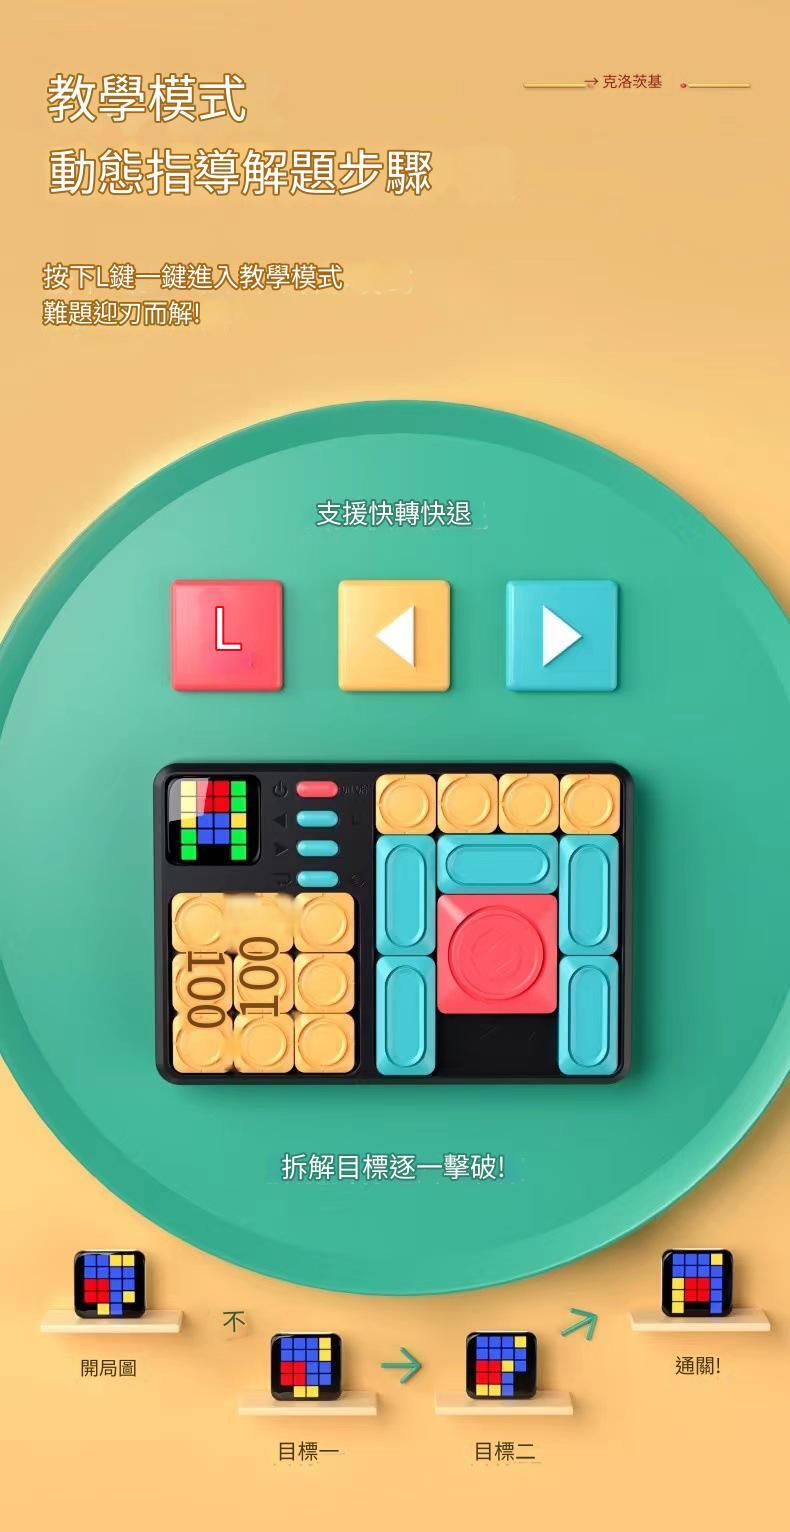 Super Huarongdao sliding puzzle children's intelligent electronic building blocks toy training logical thinking machine puzzle for boys